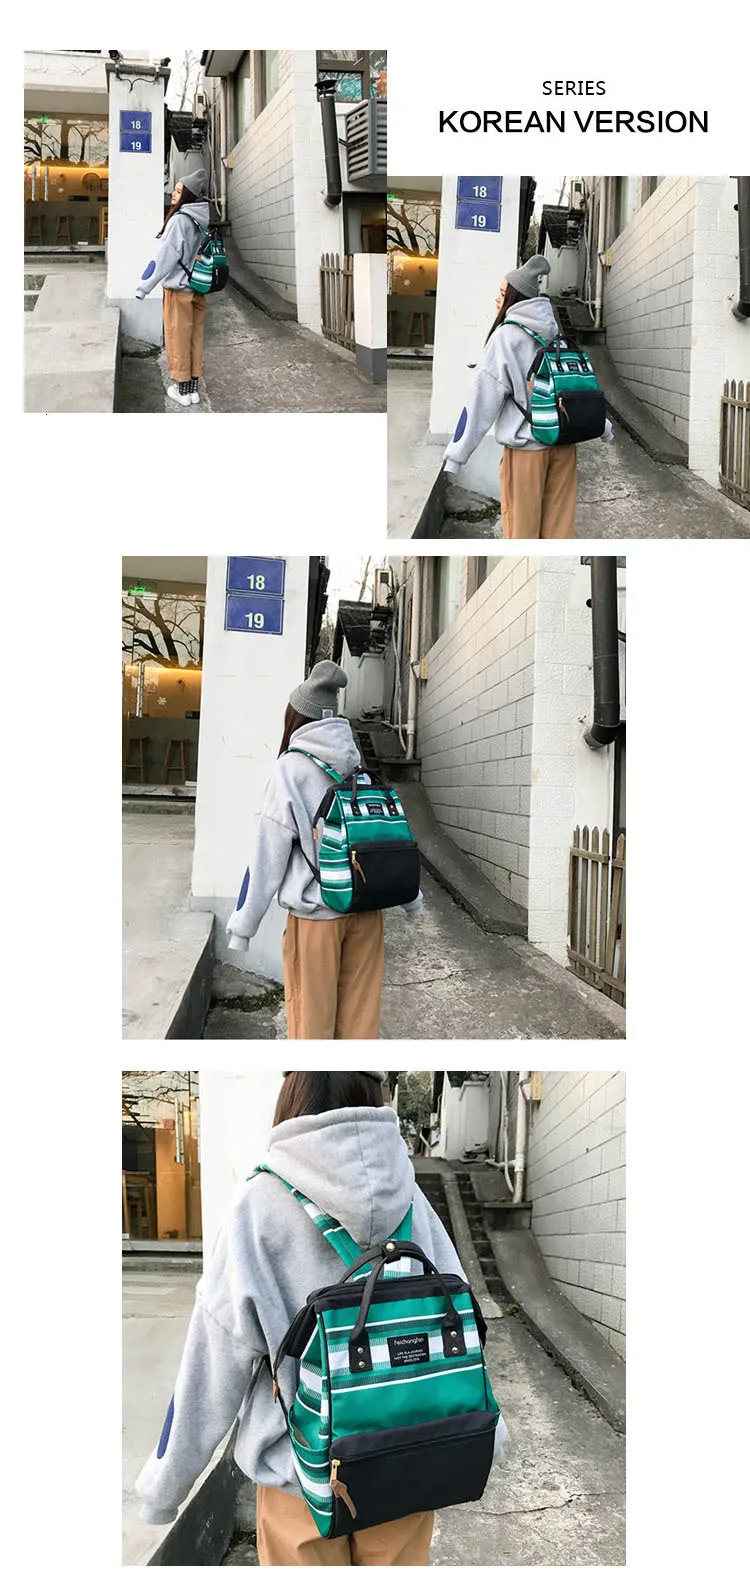 Модный холщовый рюкзак для ноутбука, школьный рюкзак для женщин, модные дорожные сумки для девочек, для подростков, Mochila Feminina Escolar Bagpack